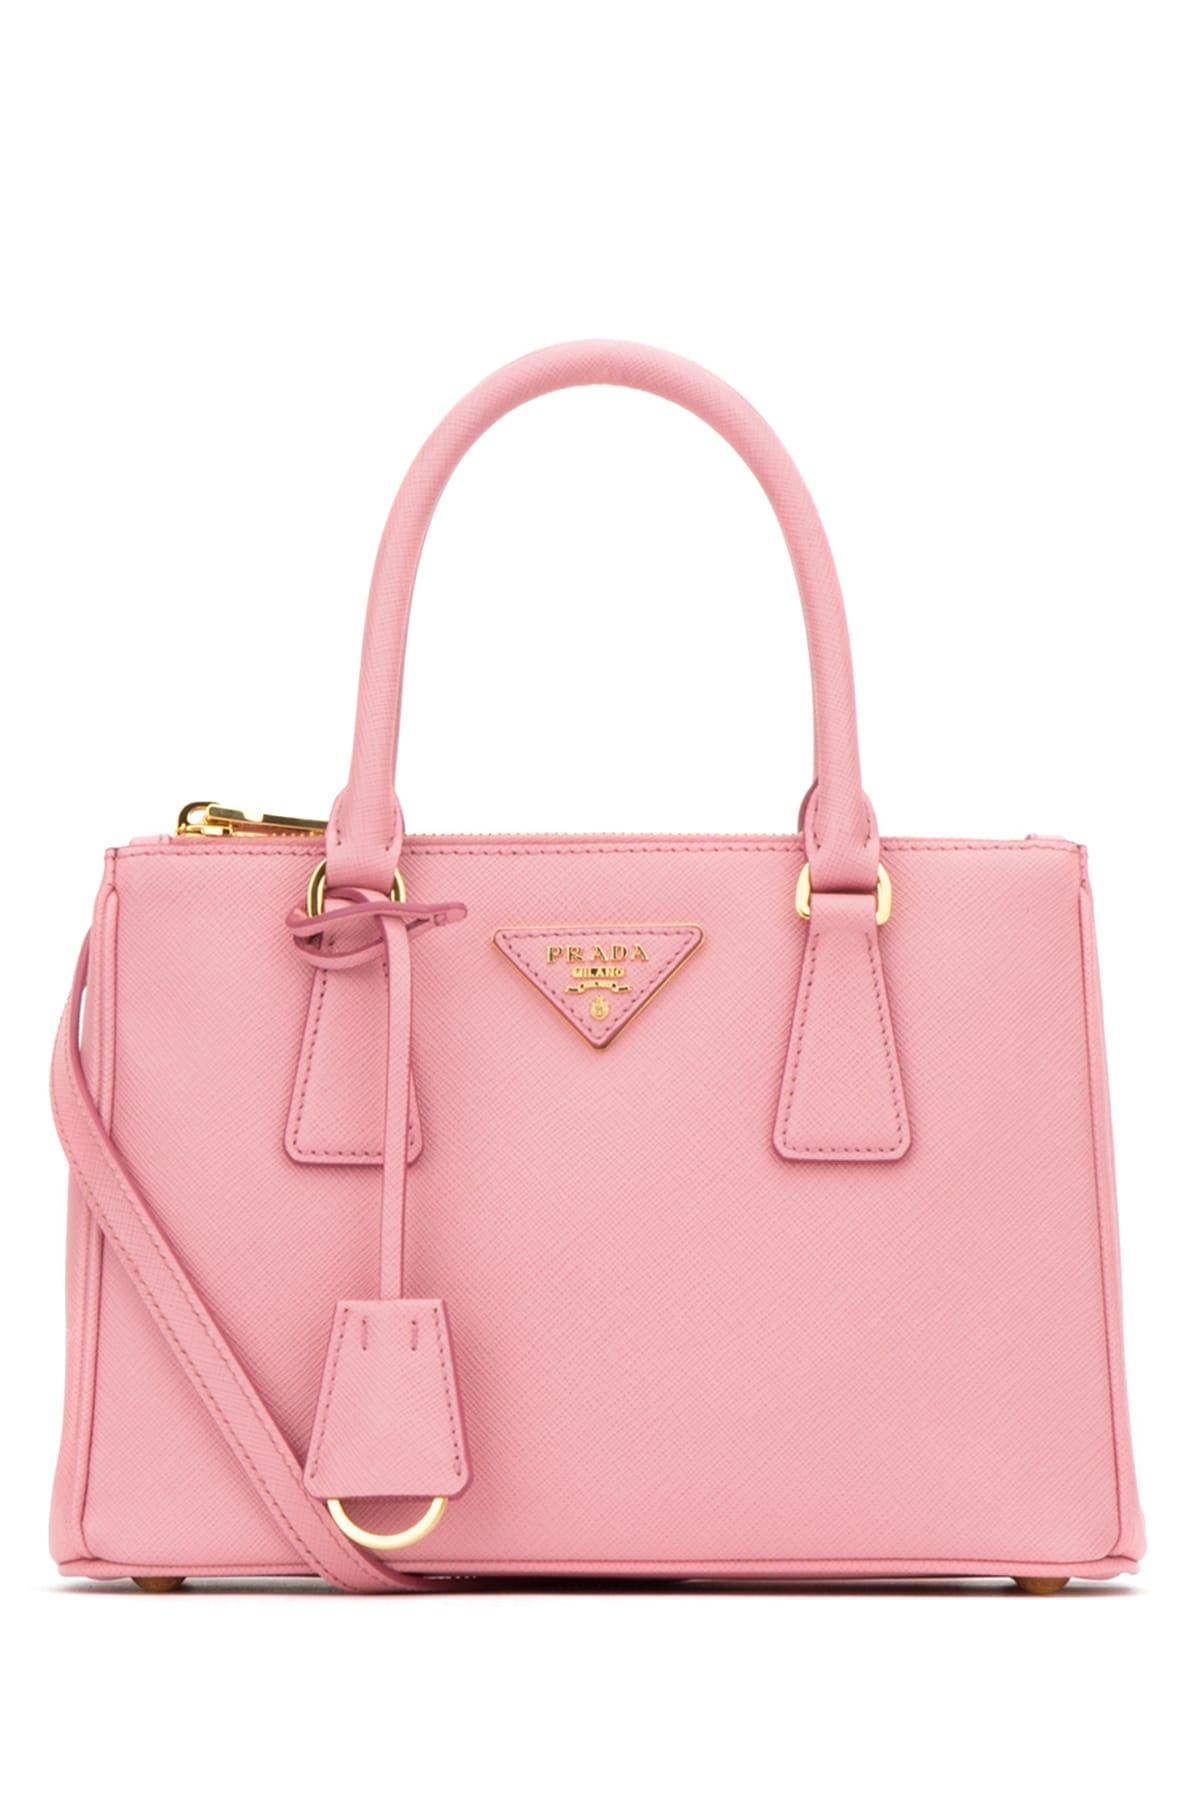 Prada Galleria Mini Tote Bag in Pink